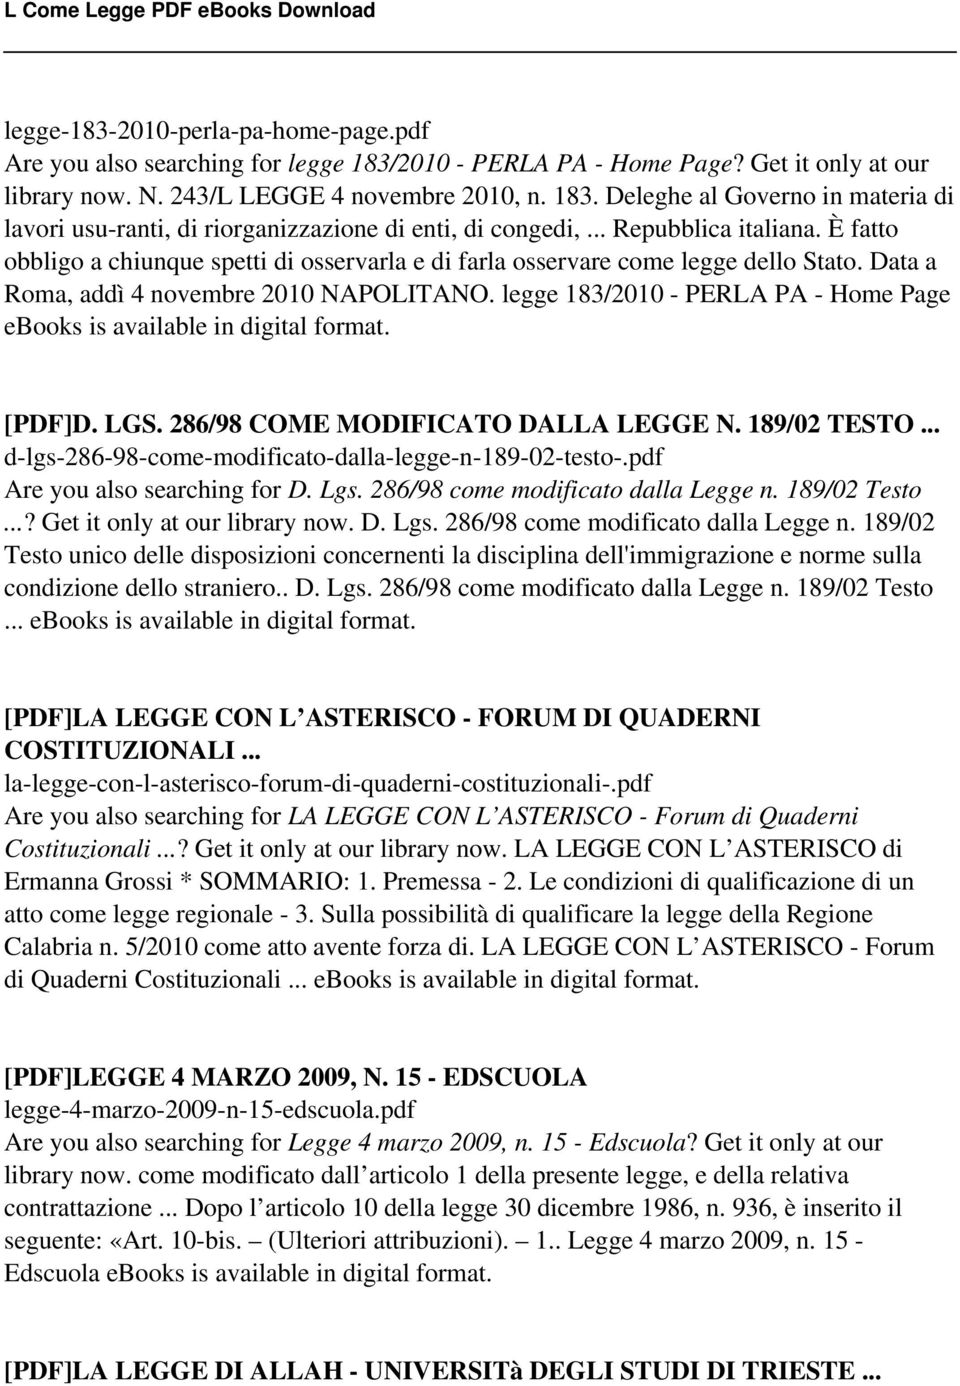 legge 183/2010 - PERLA PA - Home Page ebooks is [PDF]D. LGS. 286/98 COME MODIFICATO DALLA LEGGE N. 189/02 TESTO... d-lgs-286-98-come-modificato-dalla-legge-n-189-02-testo-.